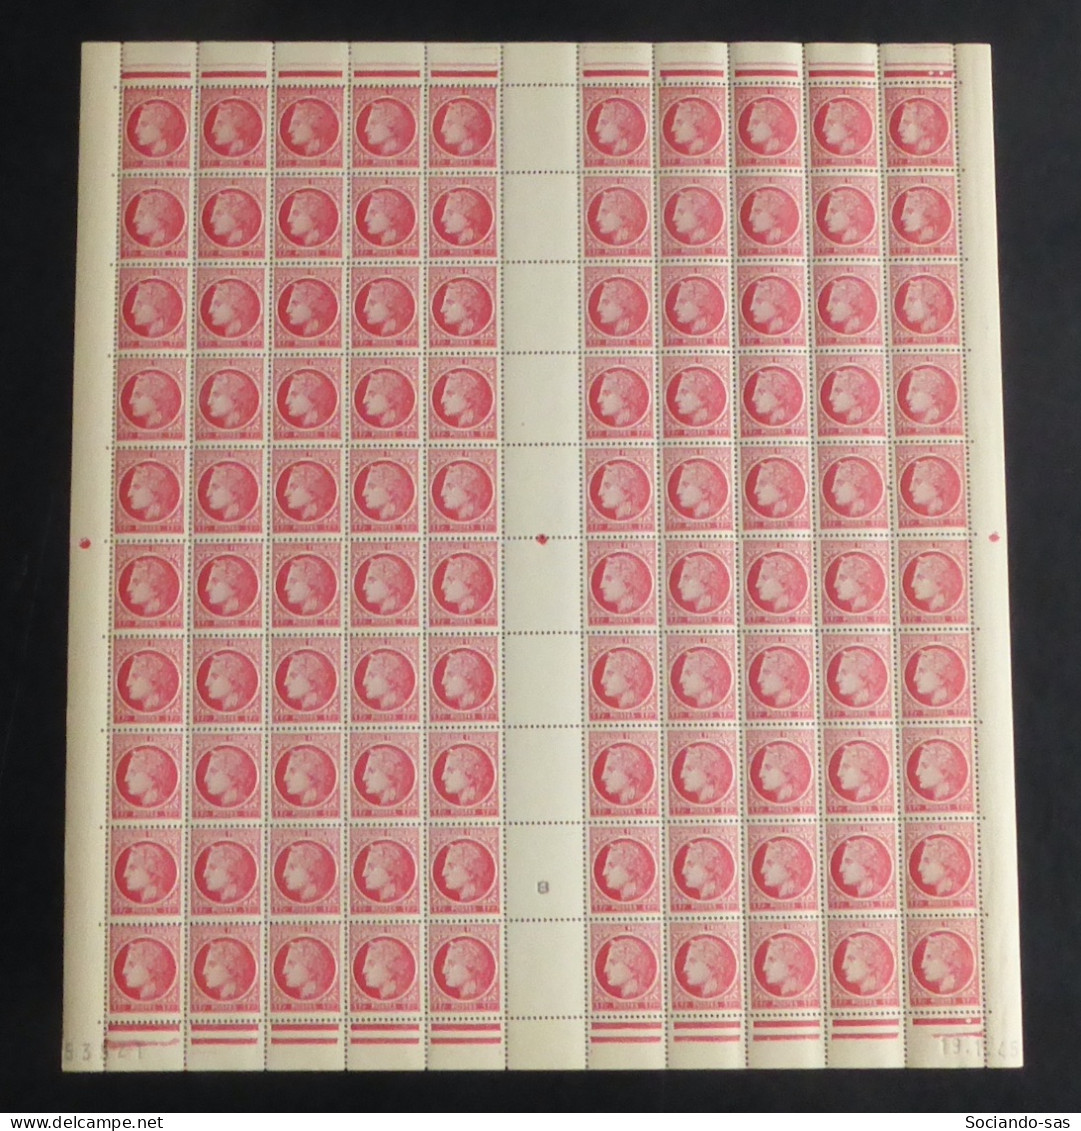 FRANCE - 1944 - N°YT. 676 - Cérès De Mazelin 1f Rose-rouge - Feuille Complète - Neuf Luxe** / MNH - Feuilles Complètes